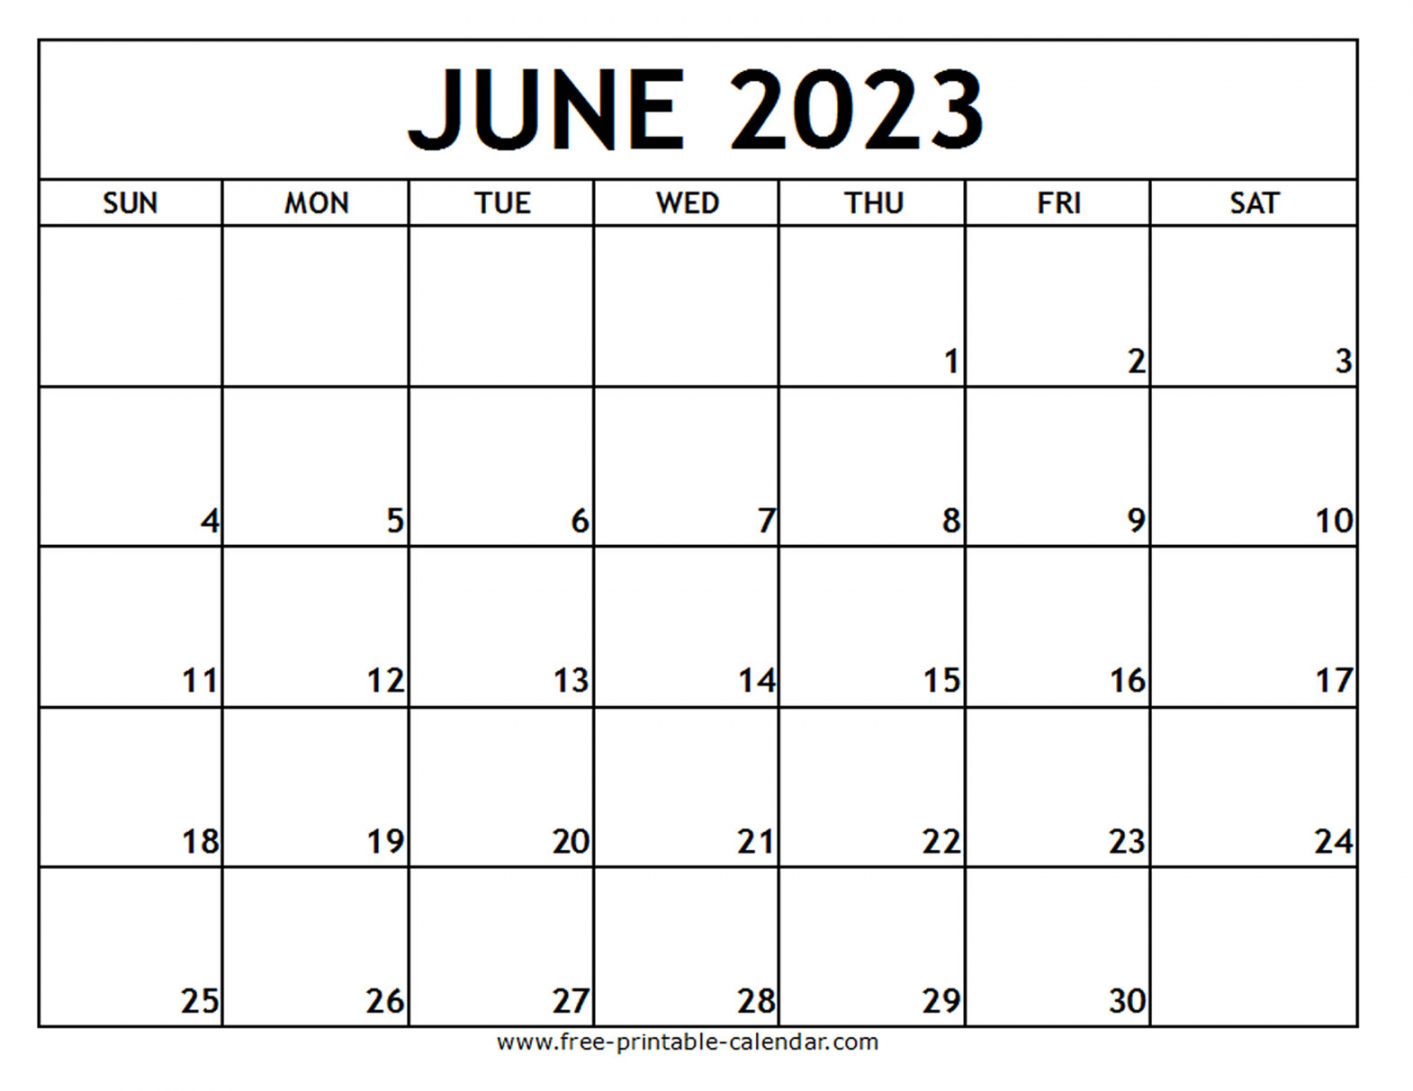 Free Printable June 2023 Calendar - Printable - June  Printable Calendar - Free-printable-calendar